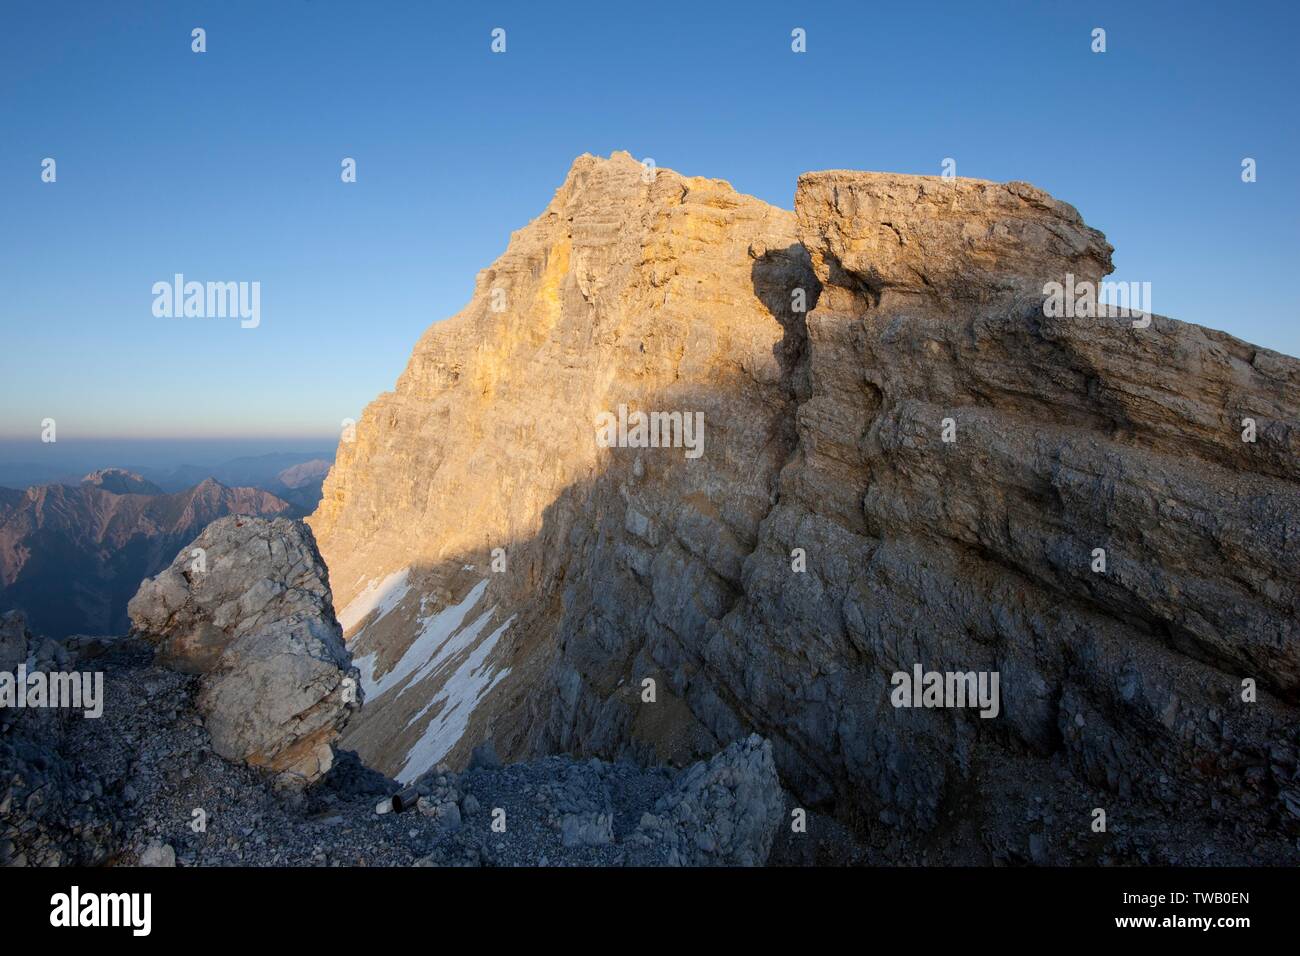 Autriche, Tyrol, montagnes de Karwendel, Birkkarspitze (pic) dans la lumière du coucher du soleil. Banque D'Images